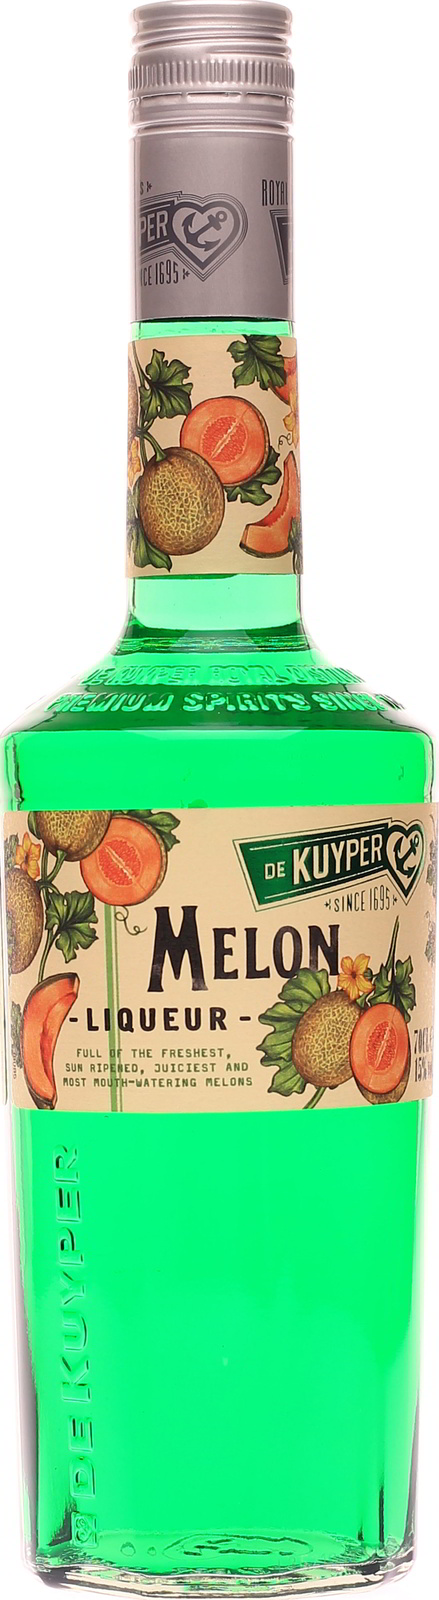 De Kuyper Melon, Melonenlikör günstig im Shop